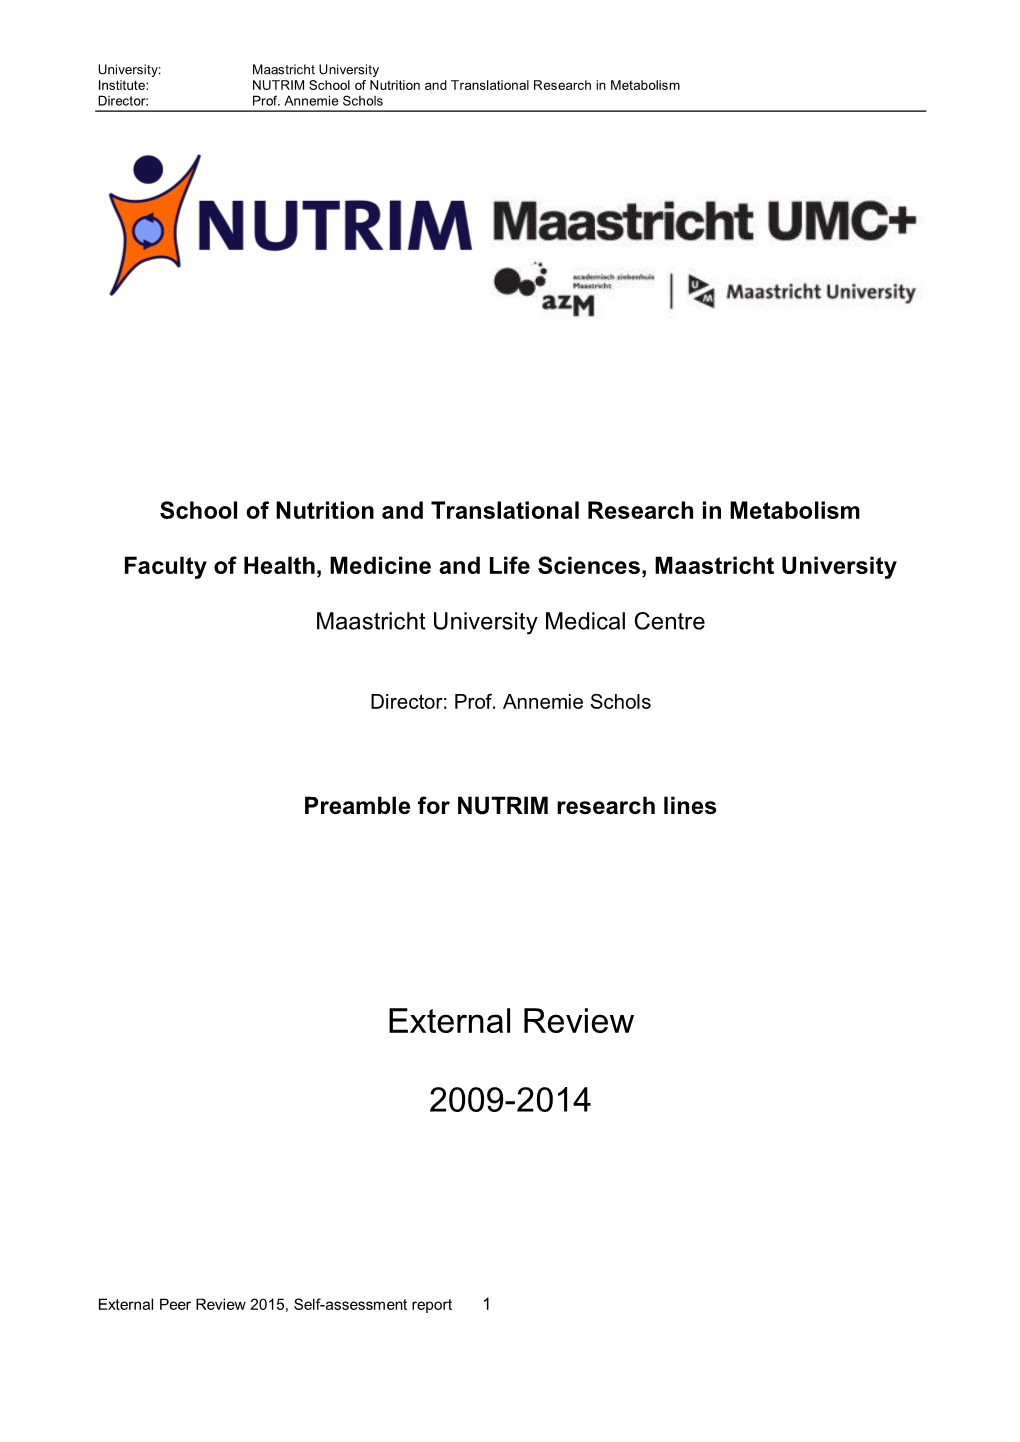 NUTRIM Self Assessment Report 2009